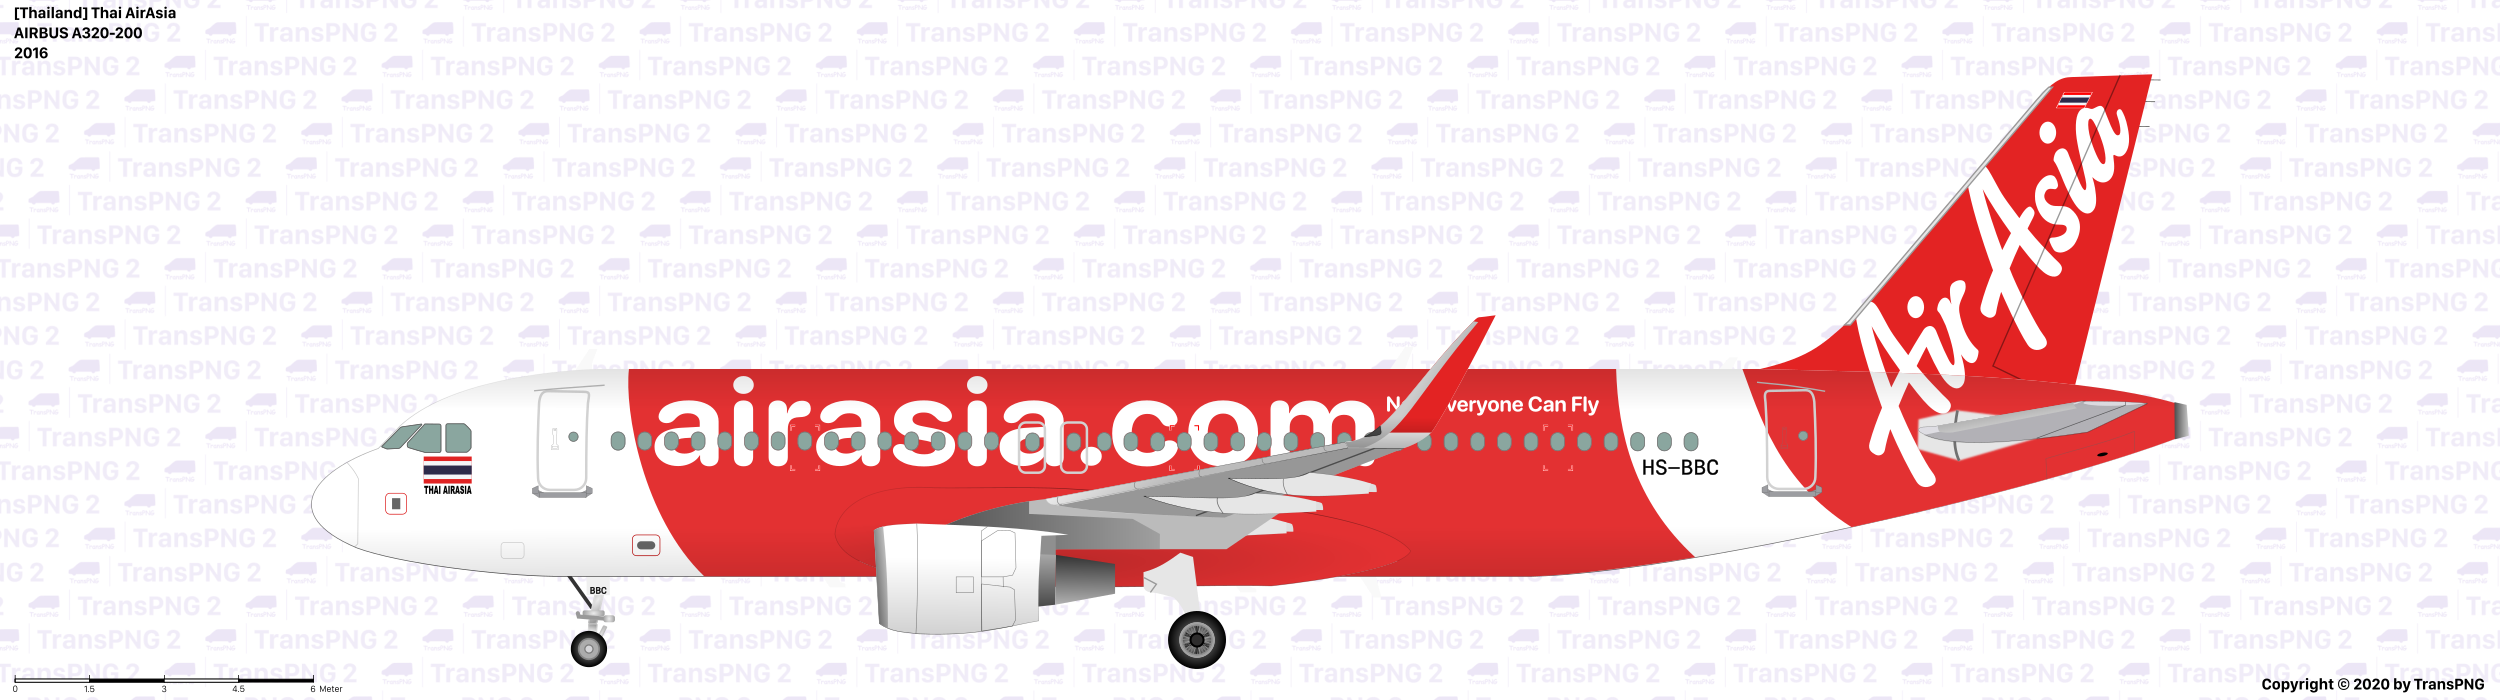 TransPNG.net | 分享世界各地多種交通工具的優秀繪圖 - 飛機 50497576587_22d7da9472_o